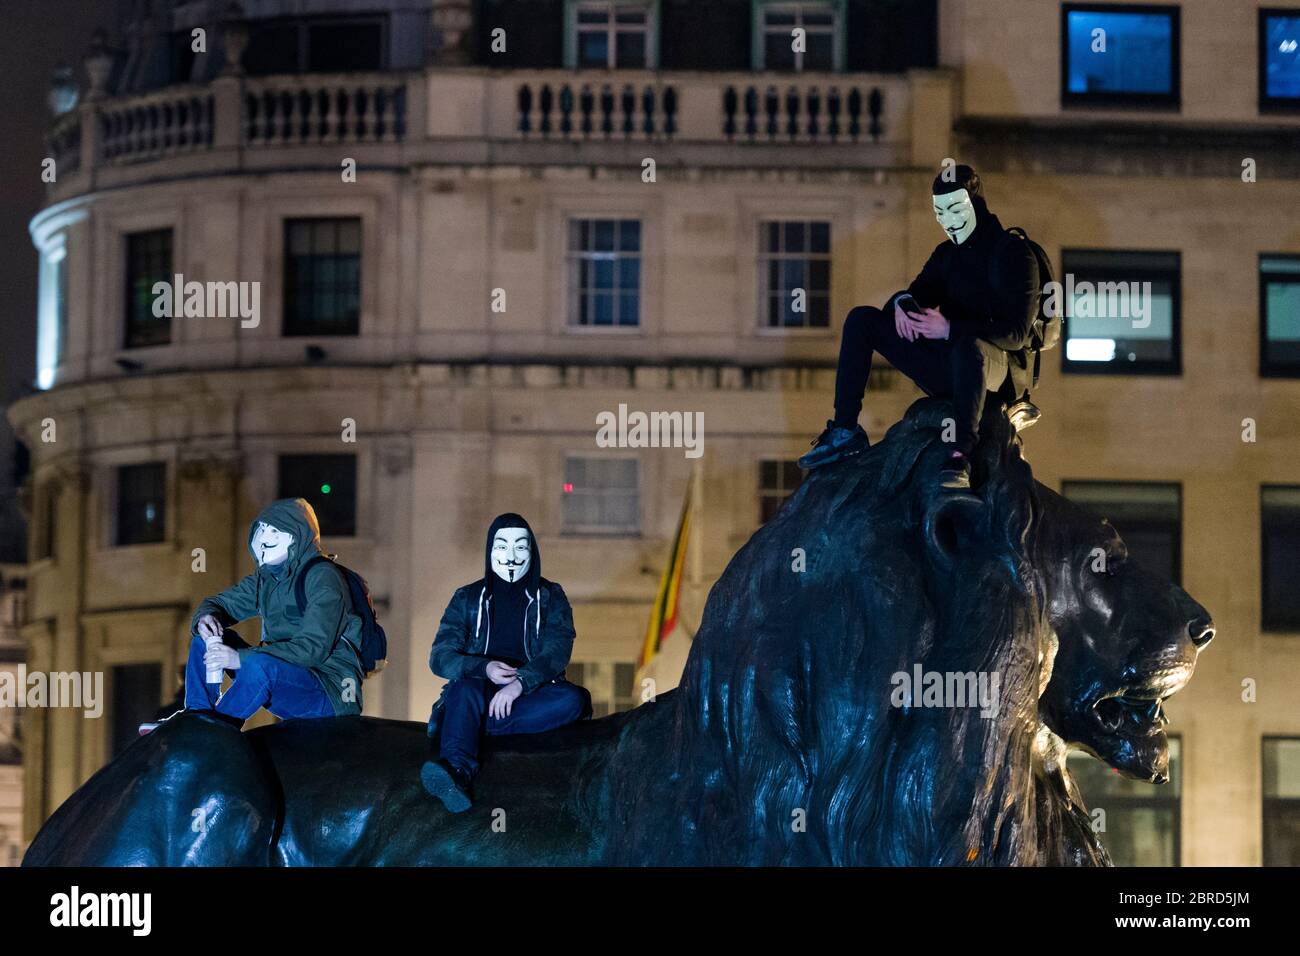 La "marcha de la Máscara del león" ve protestas llevando V para el estilo de Vendetta Guy Fawkes máscaras y demostrando contra la austeridad, la violación de la ri civil Foto de stock